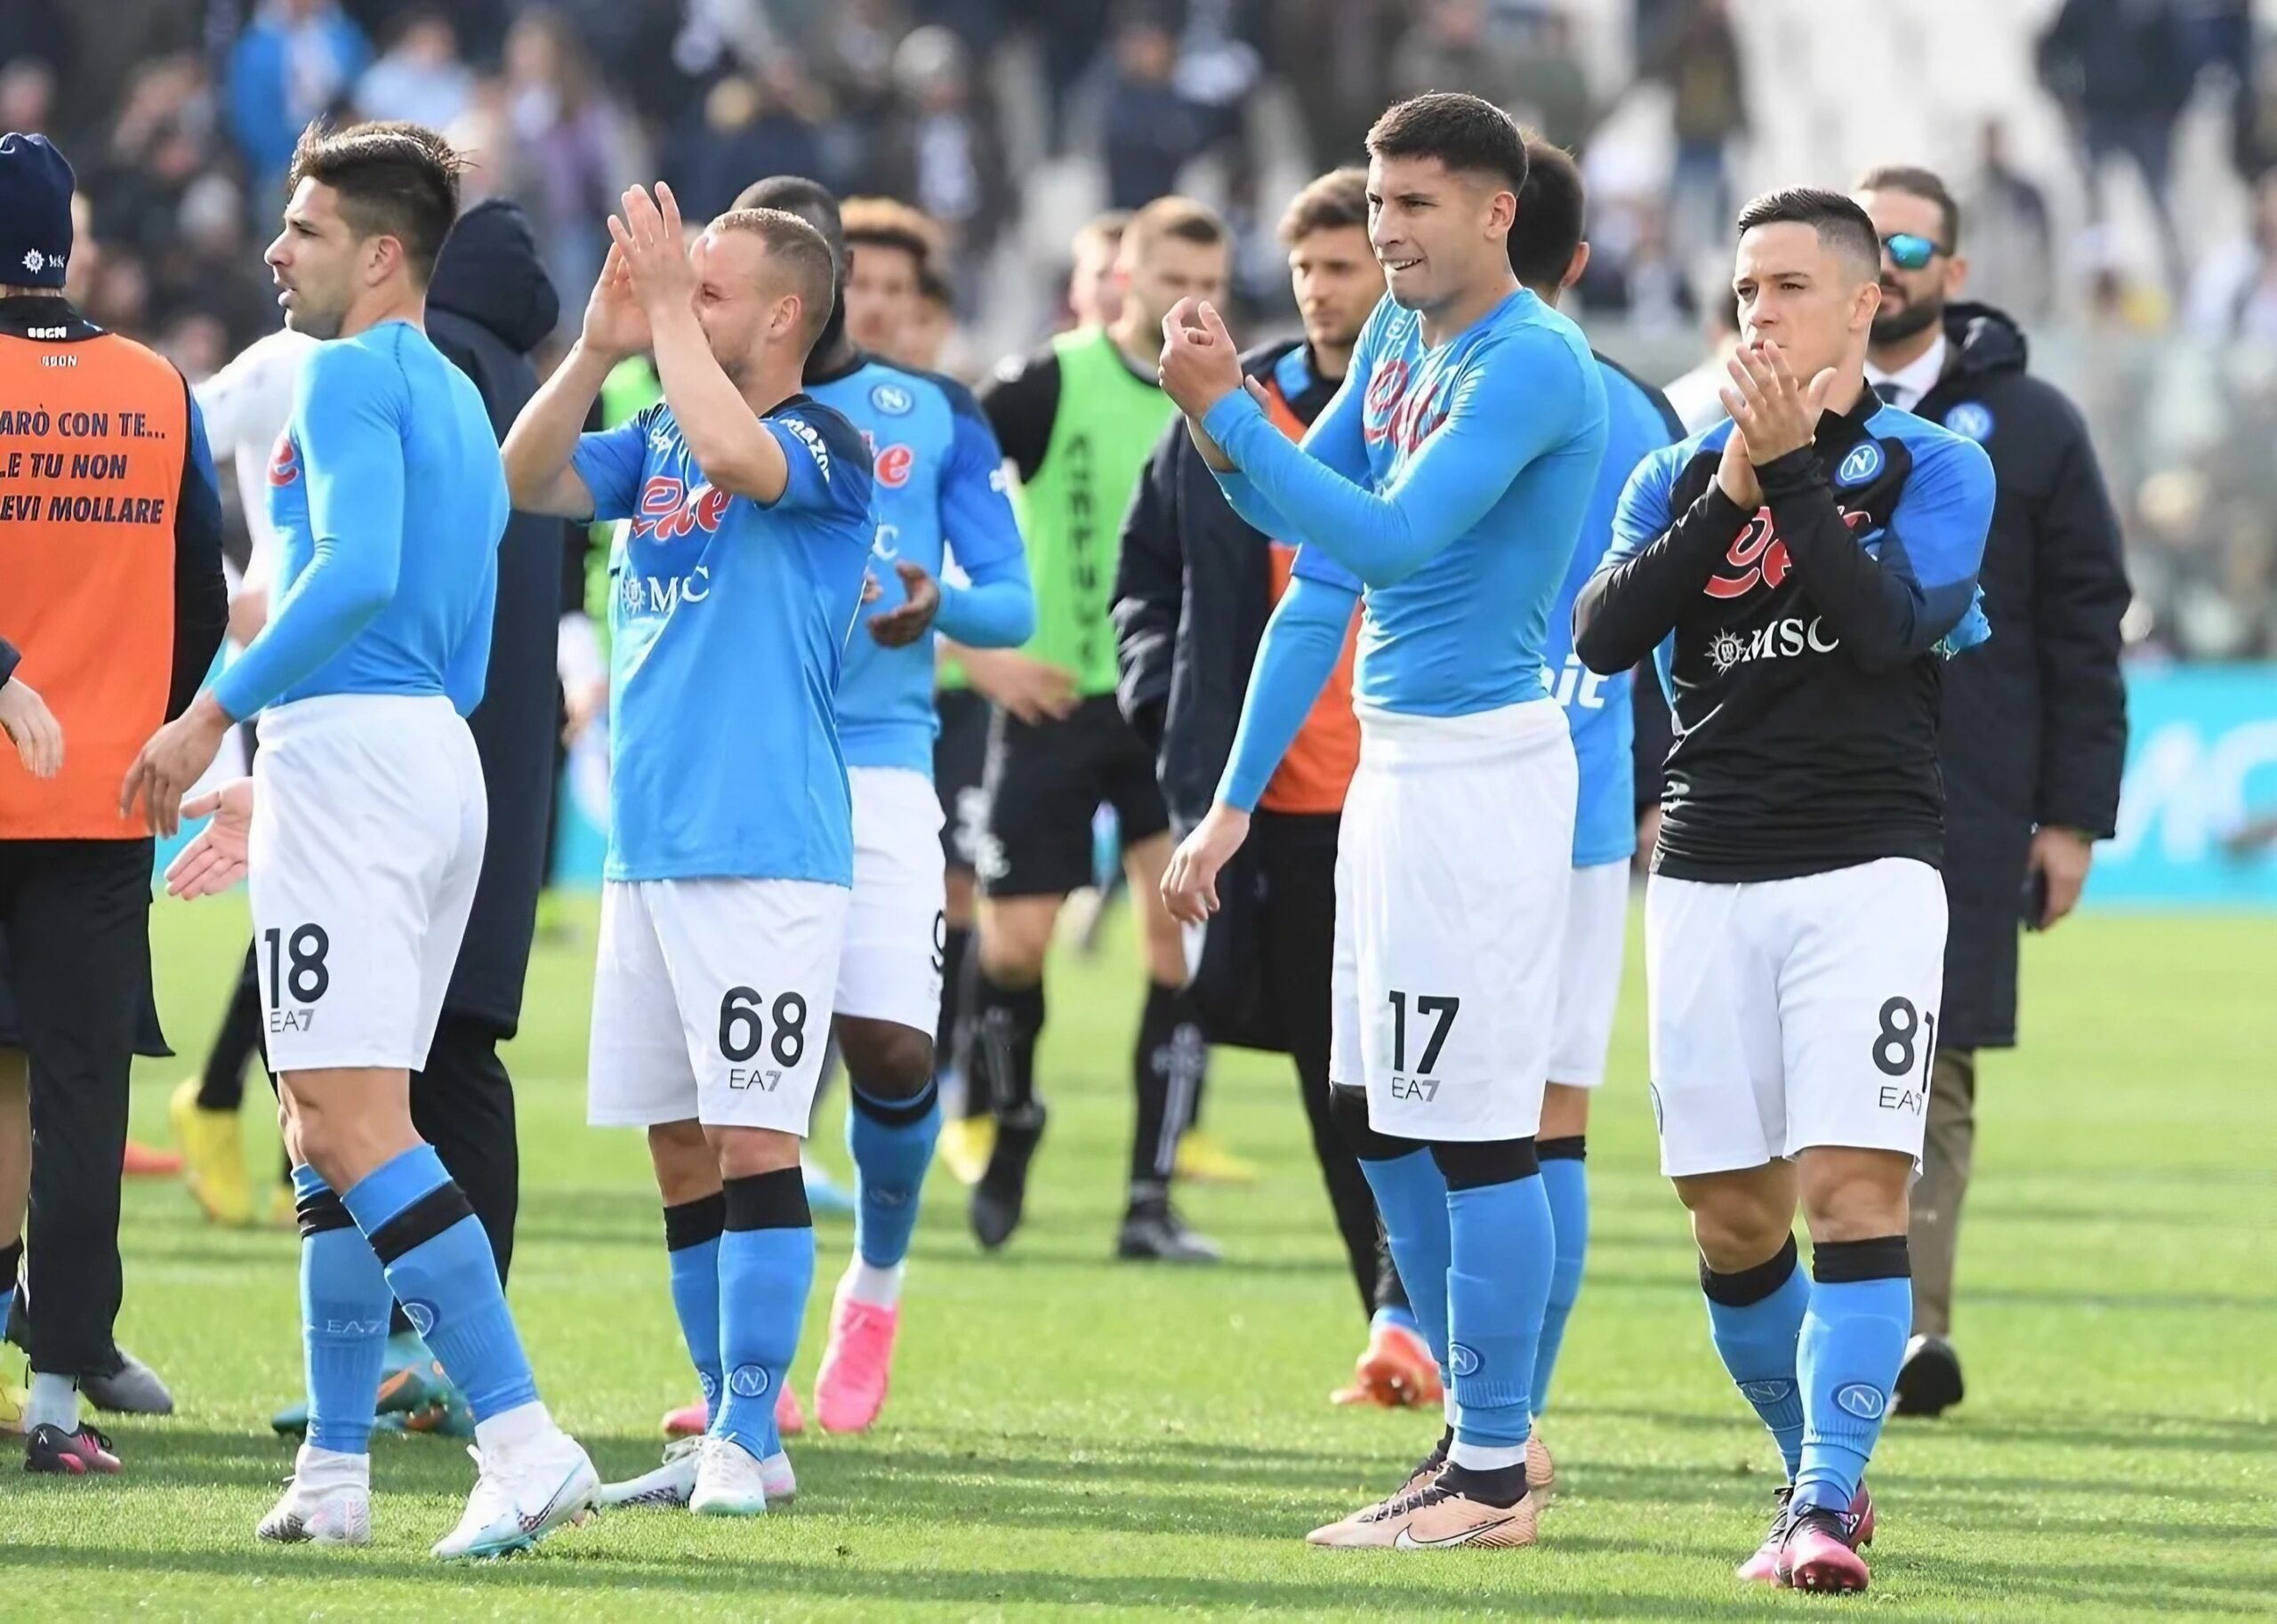 Calciatori SSC Napoli festeggiano dopo una vittoria